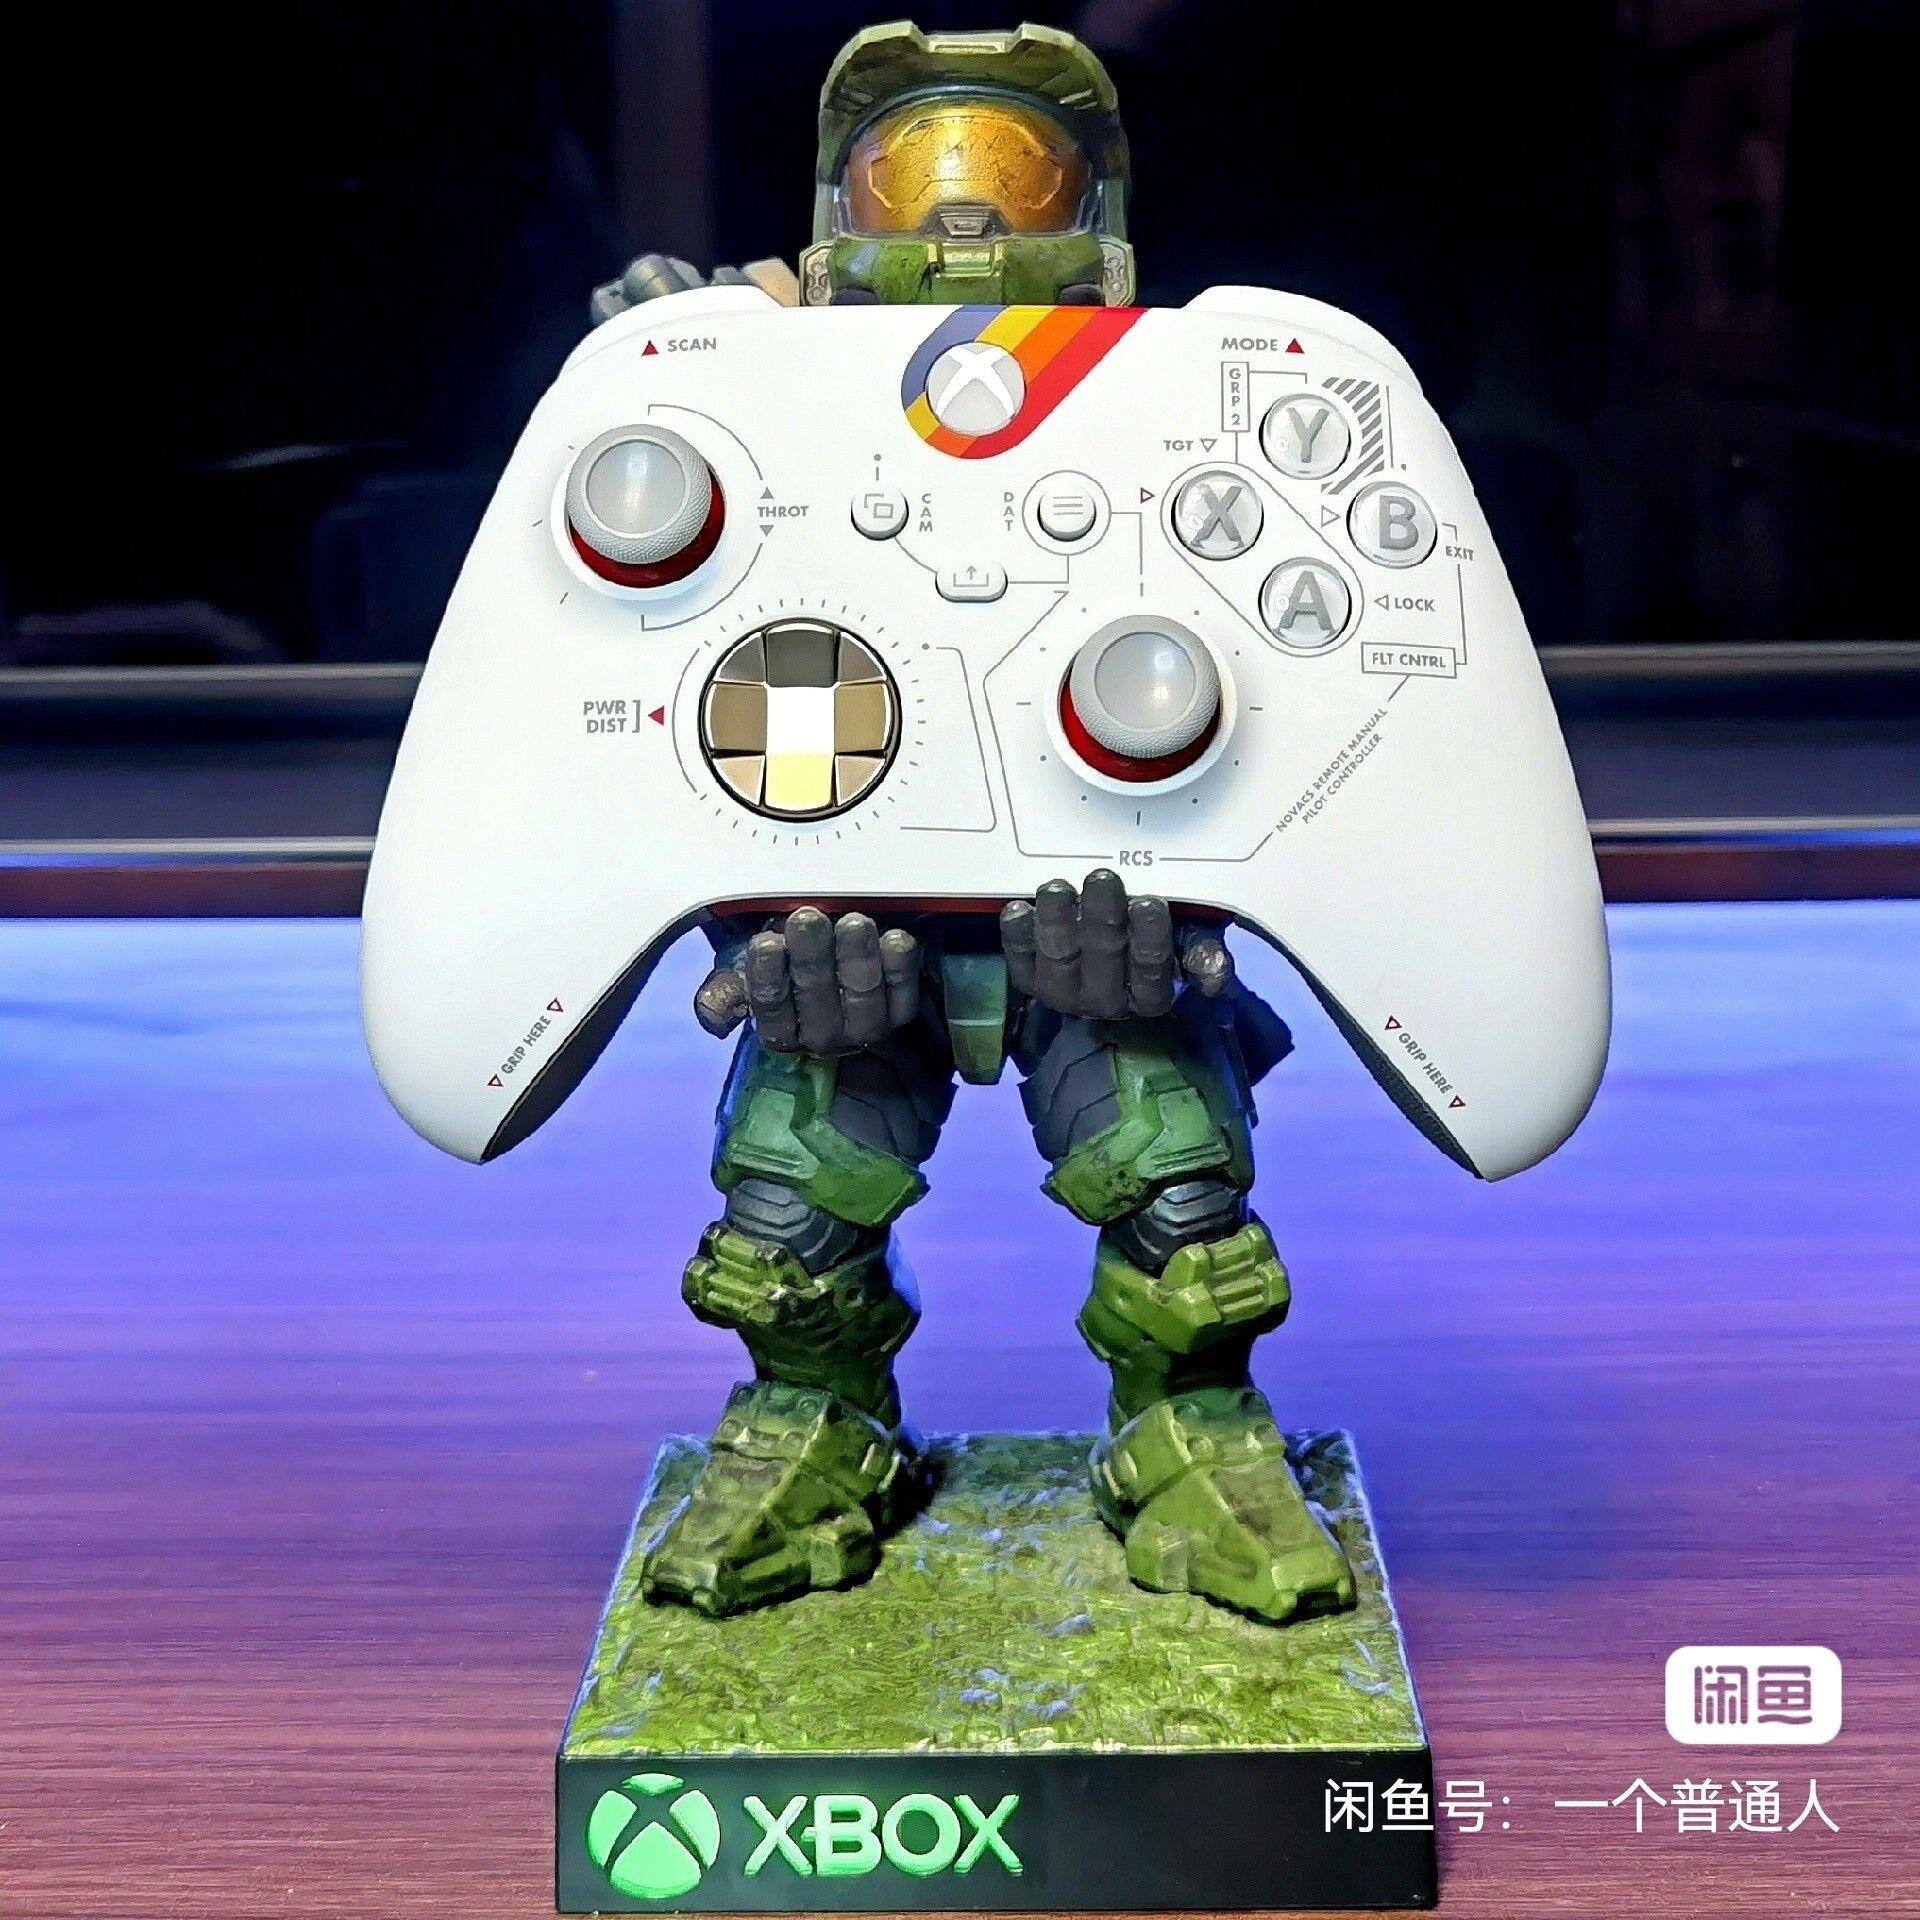 疑似《星空》限定Xbox手柄泄露 有透明扳机键 二次世界 第2张